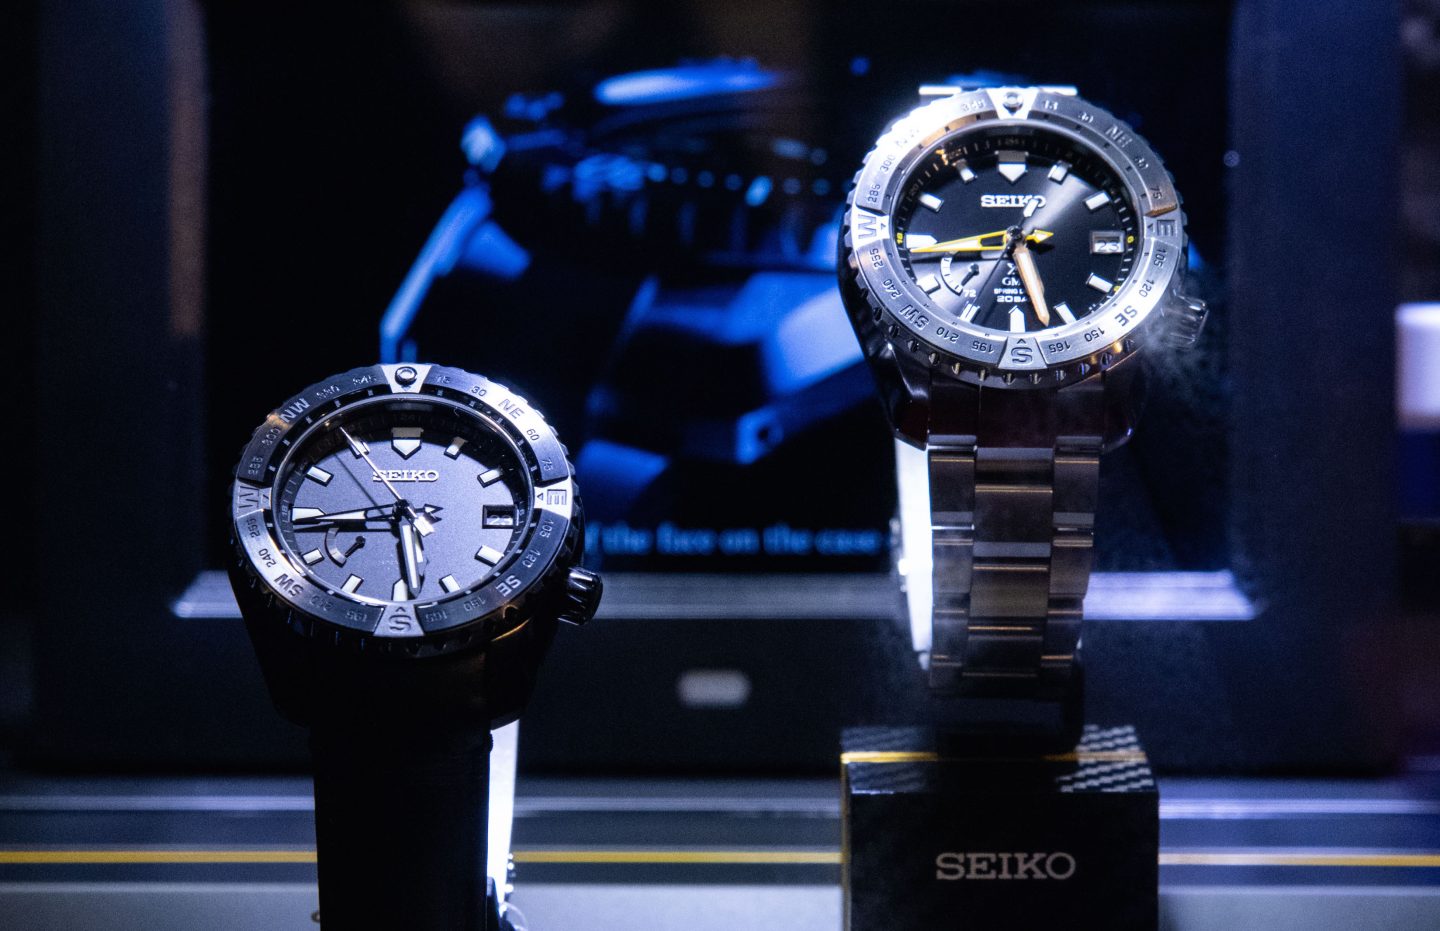 Seiko phối hợp cùng NTK Enzo Ferrari, ra mắt 6 phiên bản đồng hồ cao cấp